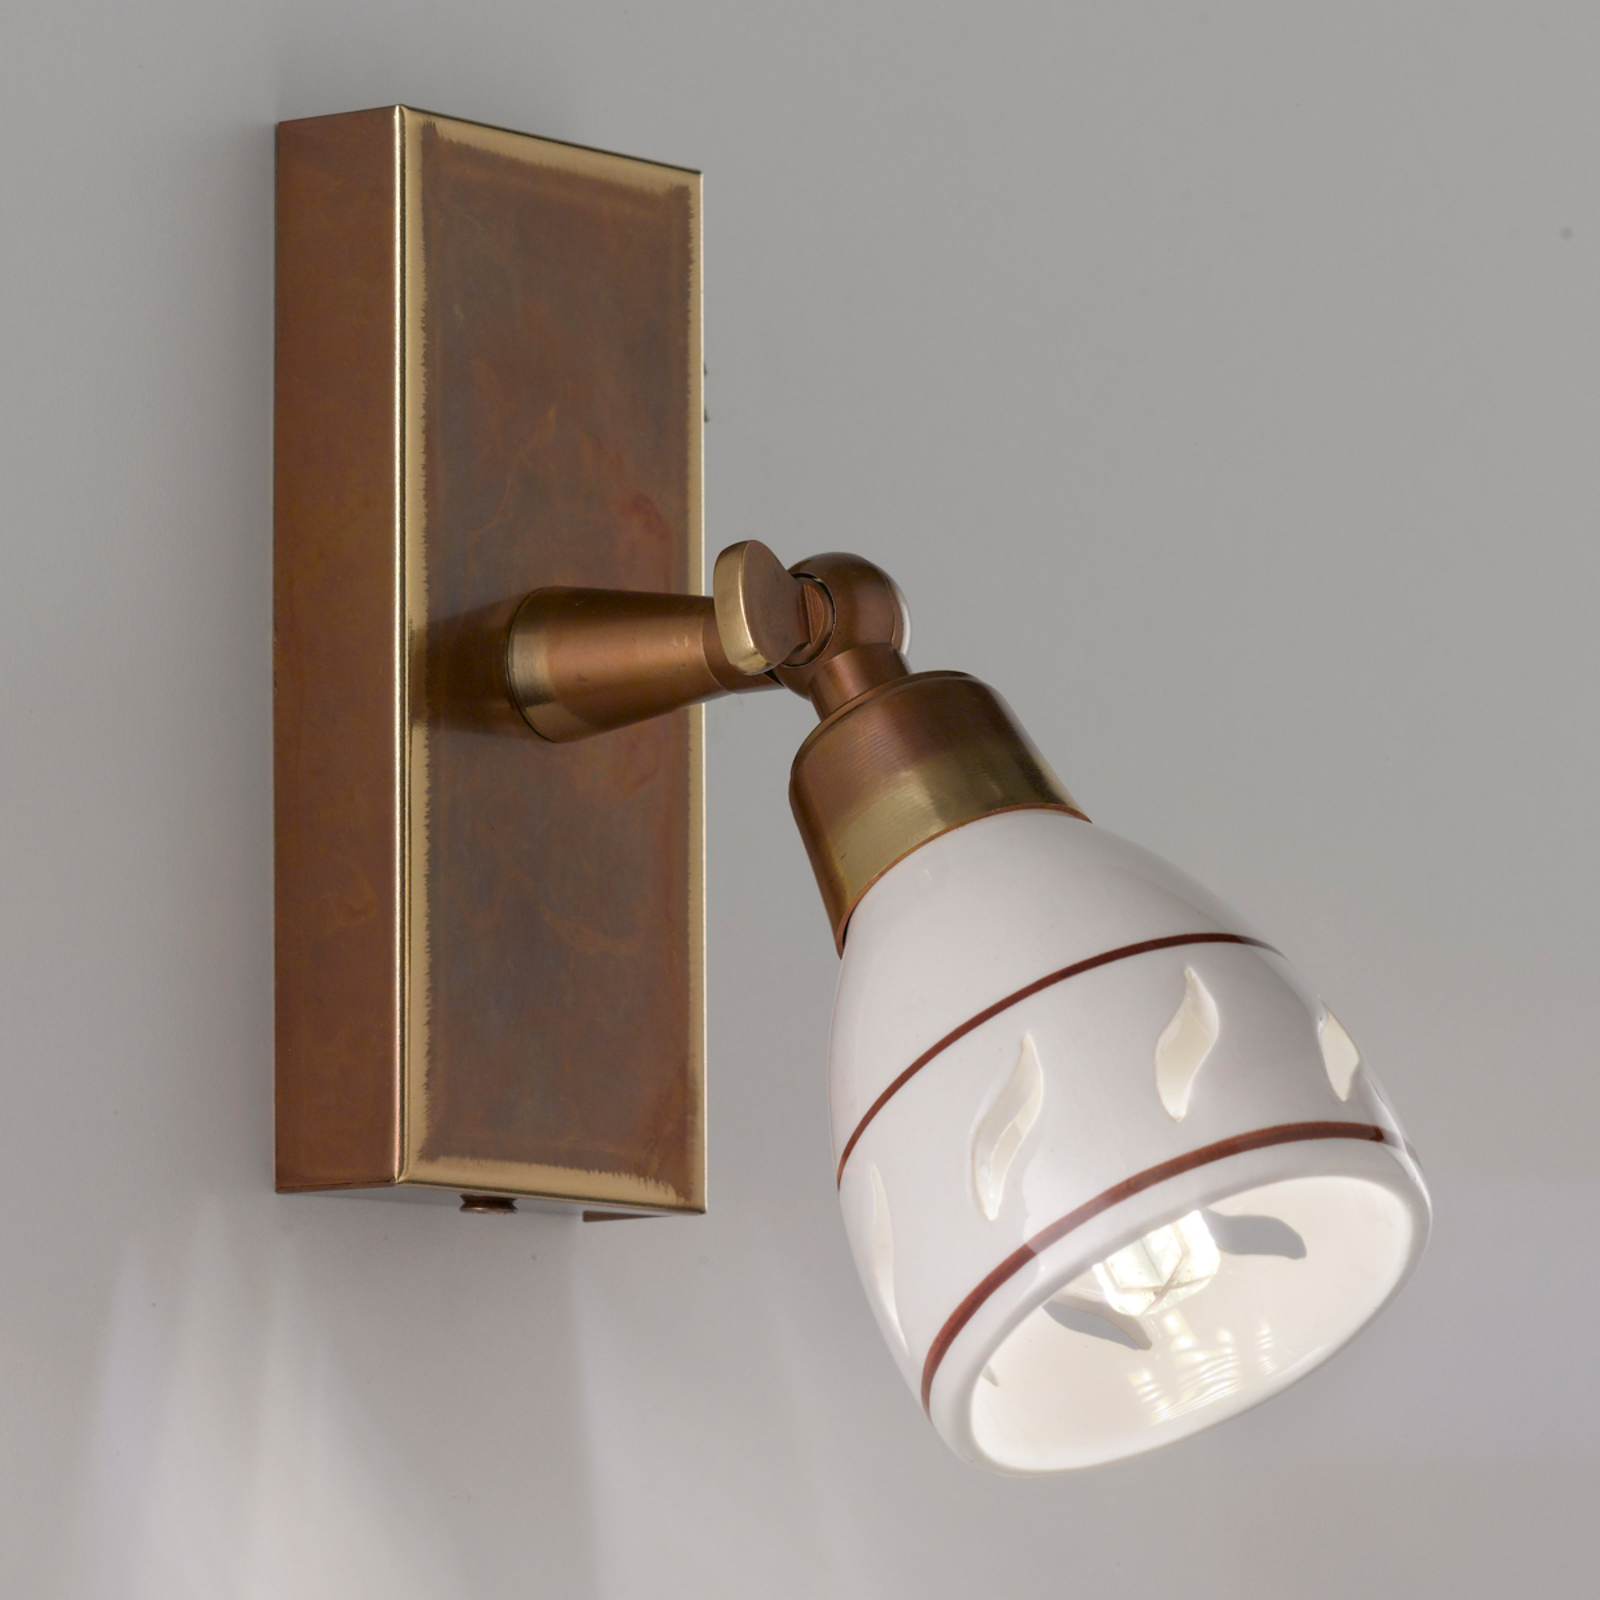 Bassano small wall spotlight, ceramic lampshade